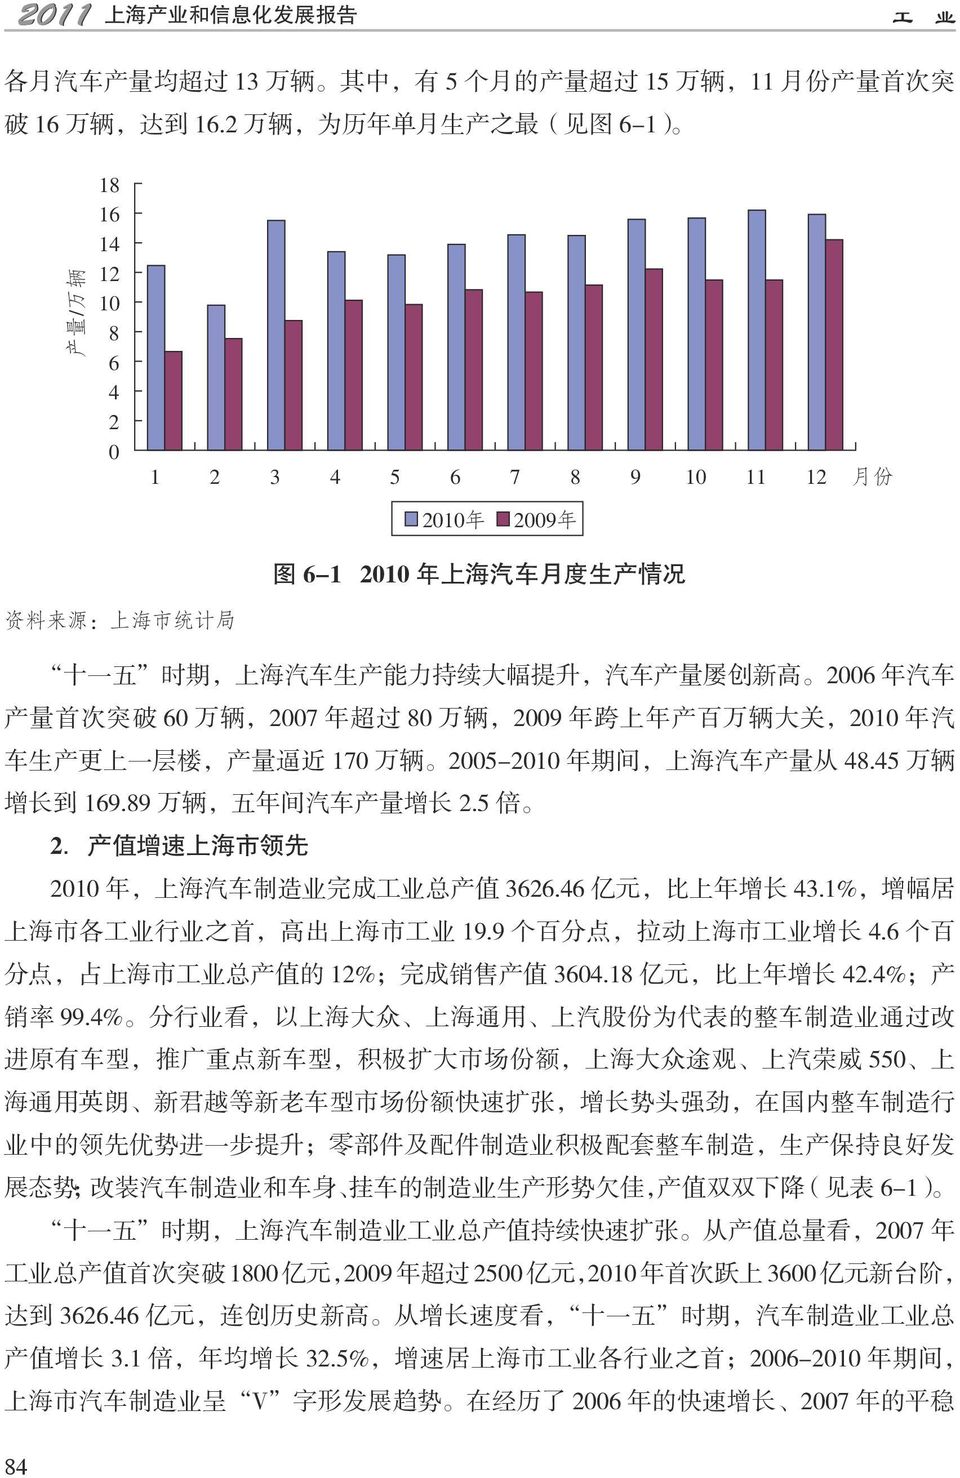 产 量 屡 创 新 高 2006 年 汽 车 产 量 首 次 突 破 60 万 辆,2007 年 超 过 80 万 辆,2009 年 跨 上 年 产 百 万 辆 大 关,2010 年 汽 车 生 产 更 上 一 层 楼, 产 量 逼 近 170 万 辆 2005-2010 年 期 间, 上 海 汽 车 产 量 从 48.45 万 辆 增 长 到 169.